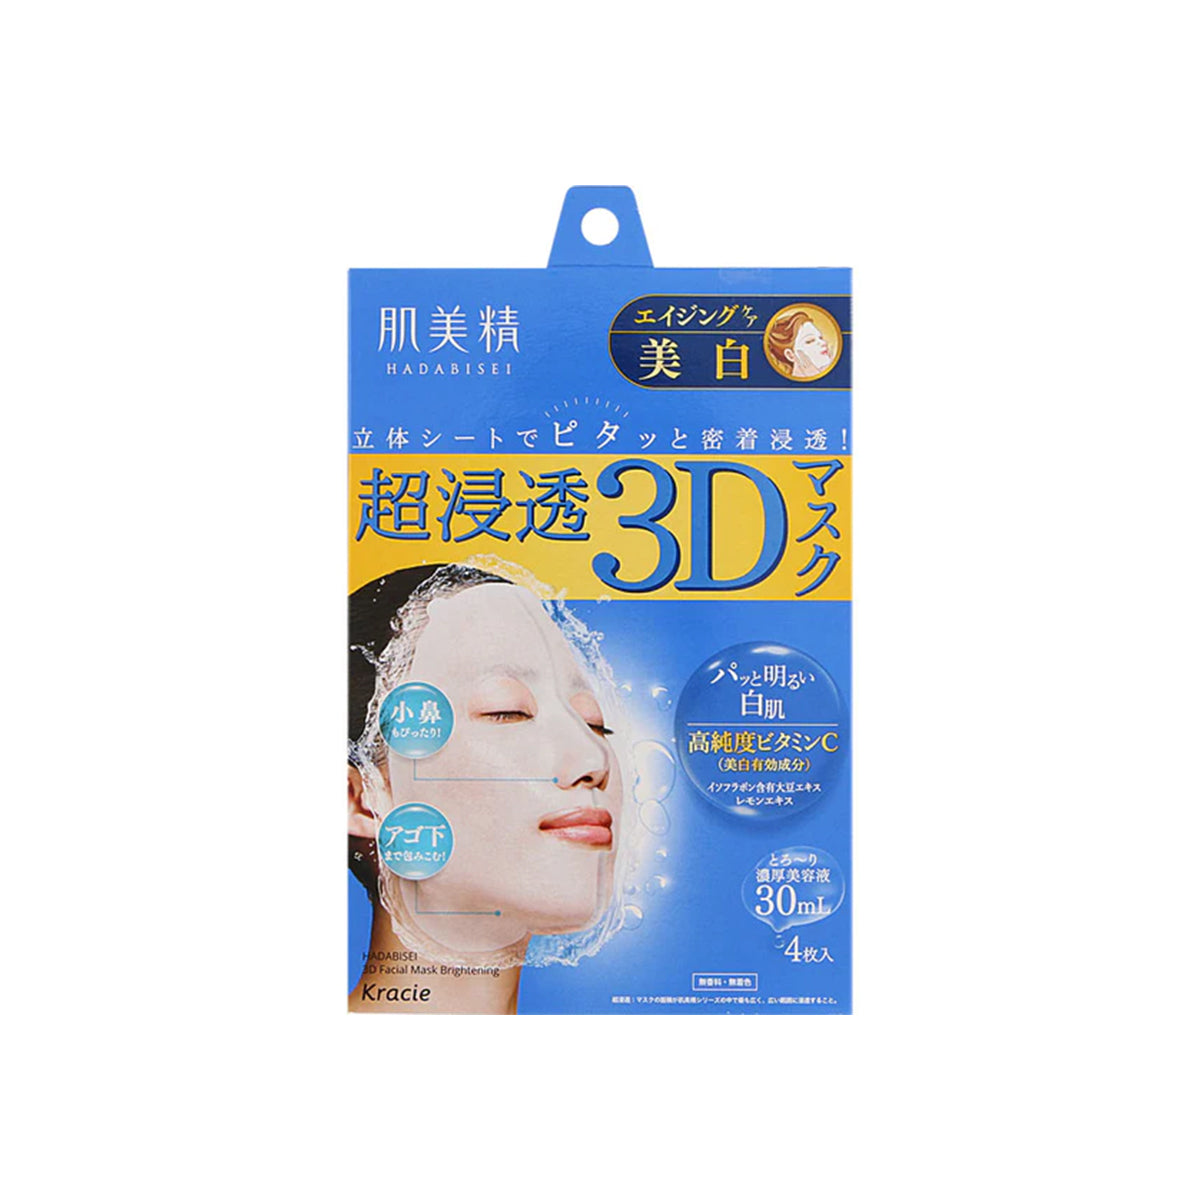 日本嘉娜宝KRACIE肌美精超浸透3D高纯度维C美白面膜 4片